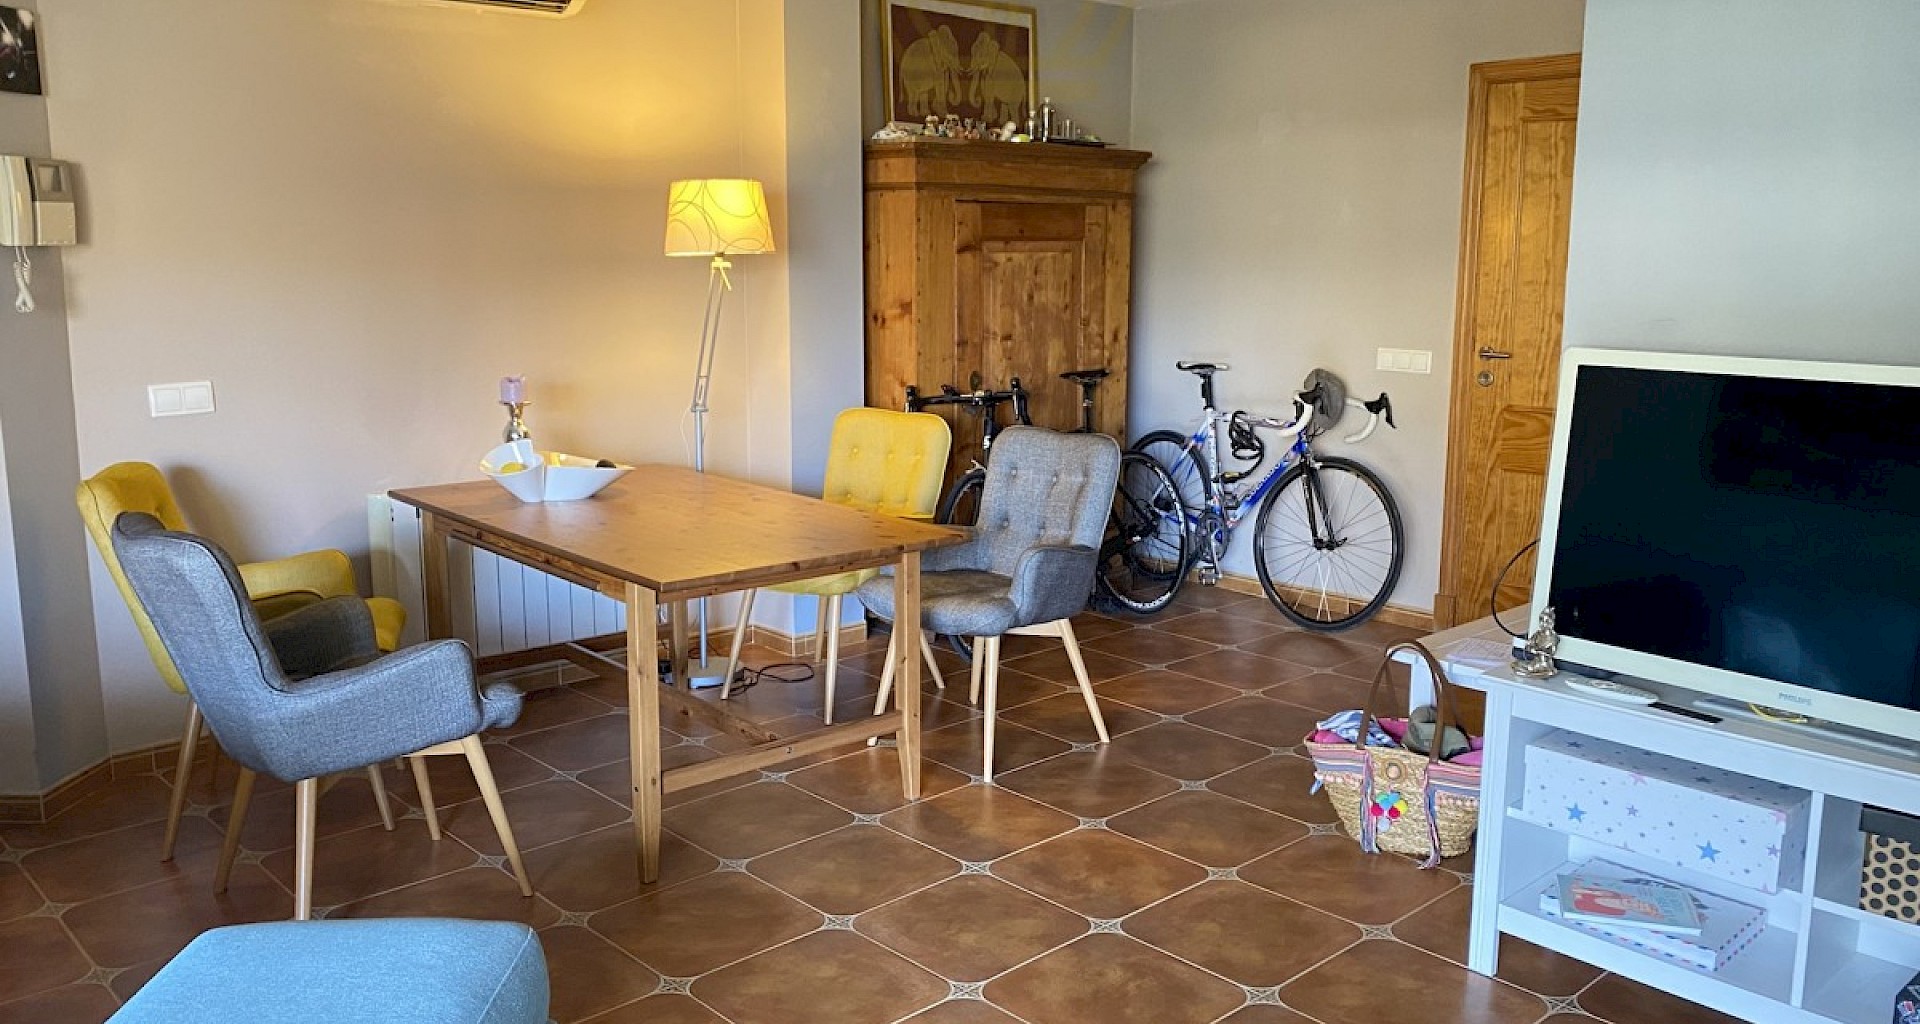 KROHN & LUEDEMANN Schöne Ferien Wohnung in Puigderros in der Nähe von Palma de Mallorca 